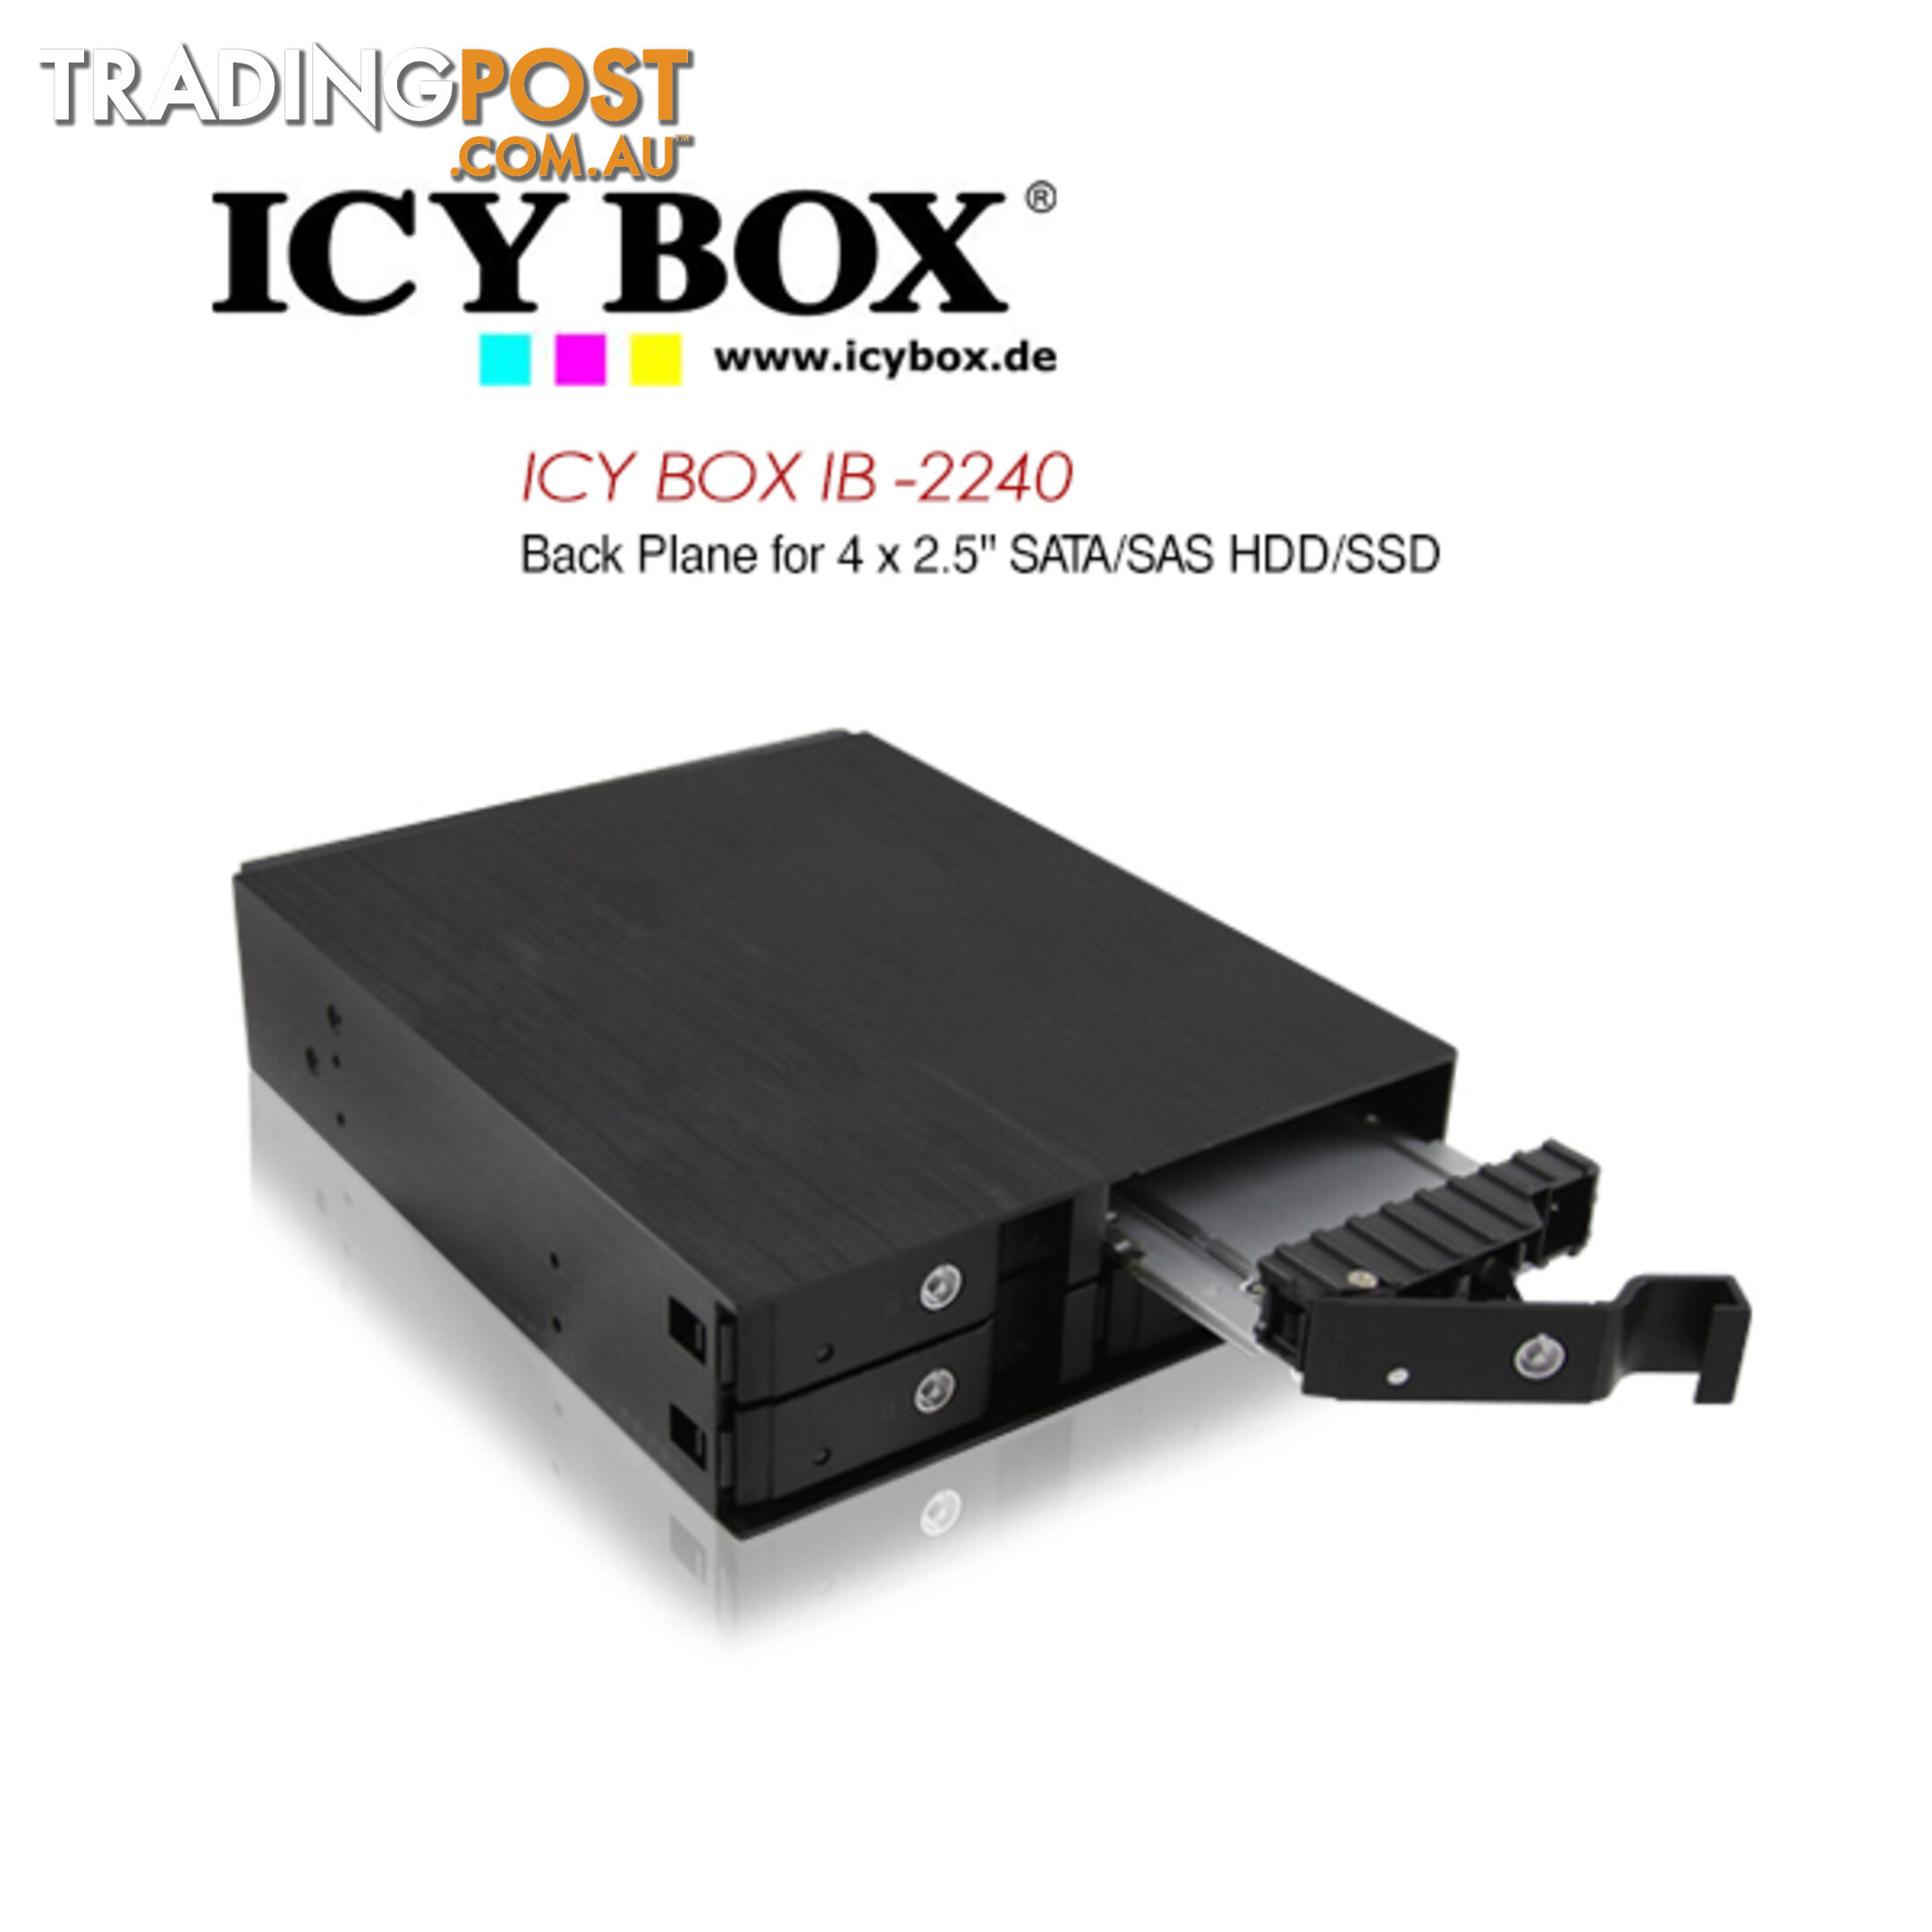 ICY BOX (IB -2240) Back Plane for 4 x 2.5 Inch SATA/SAS HDD/SSD